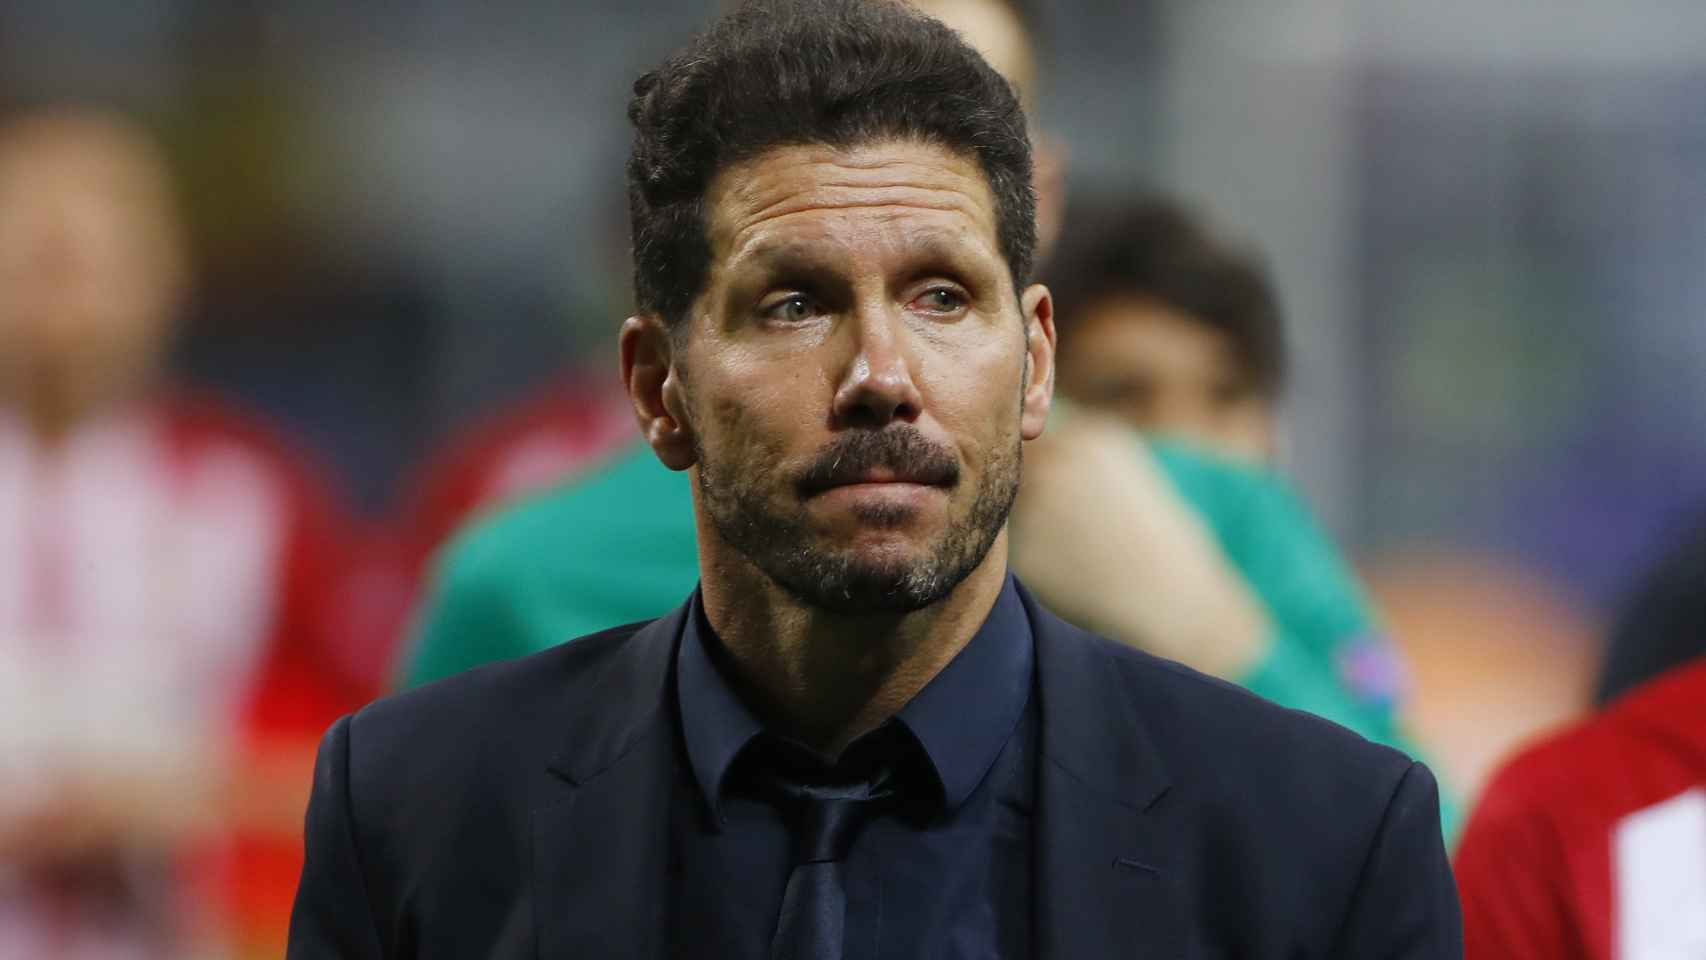 El entrenador del Atlético de Madrid Diego Simeone/Stefan Wermuth Livepic/Reuters